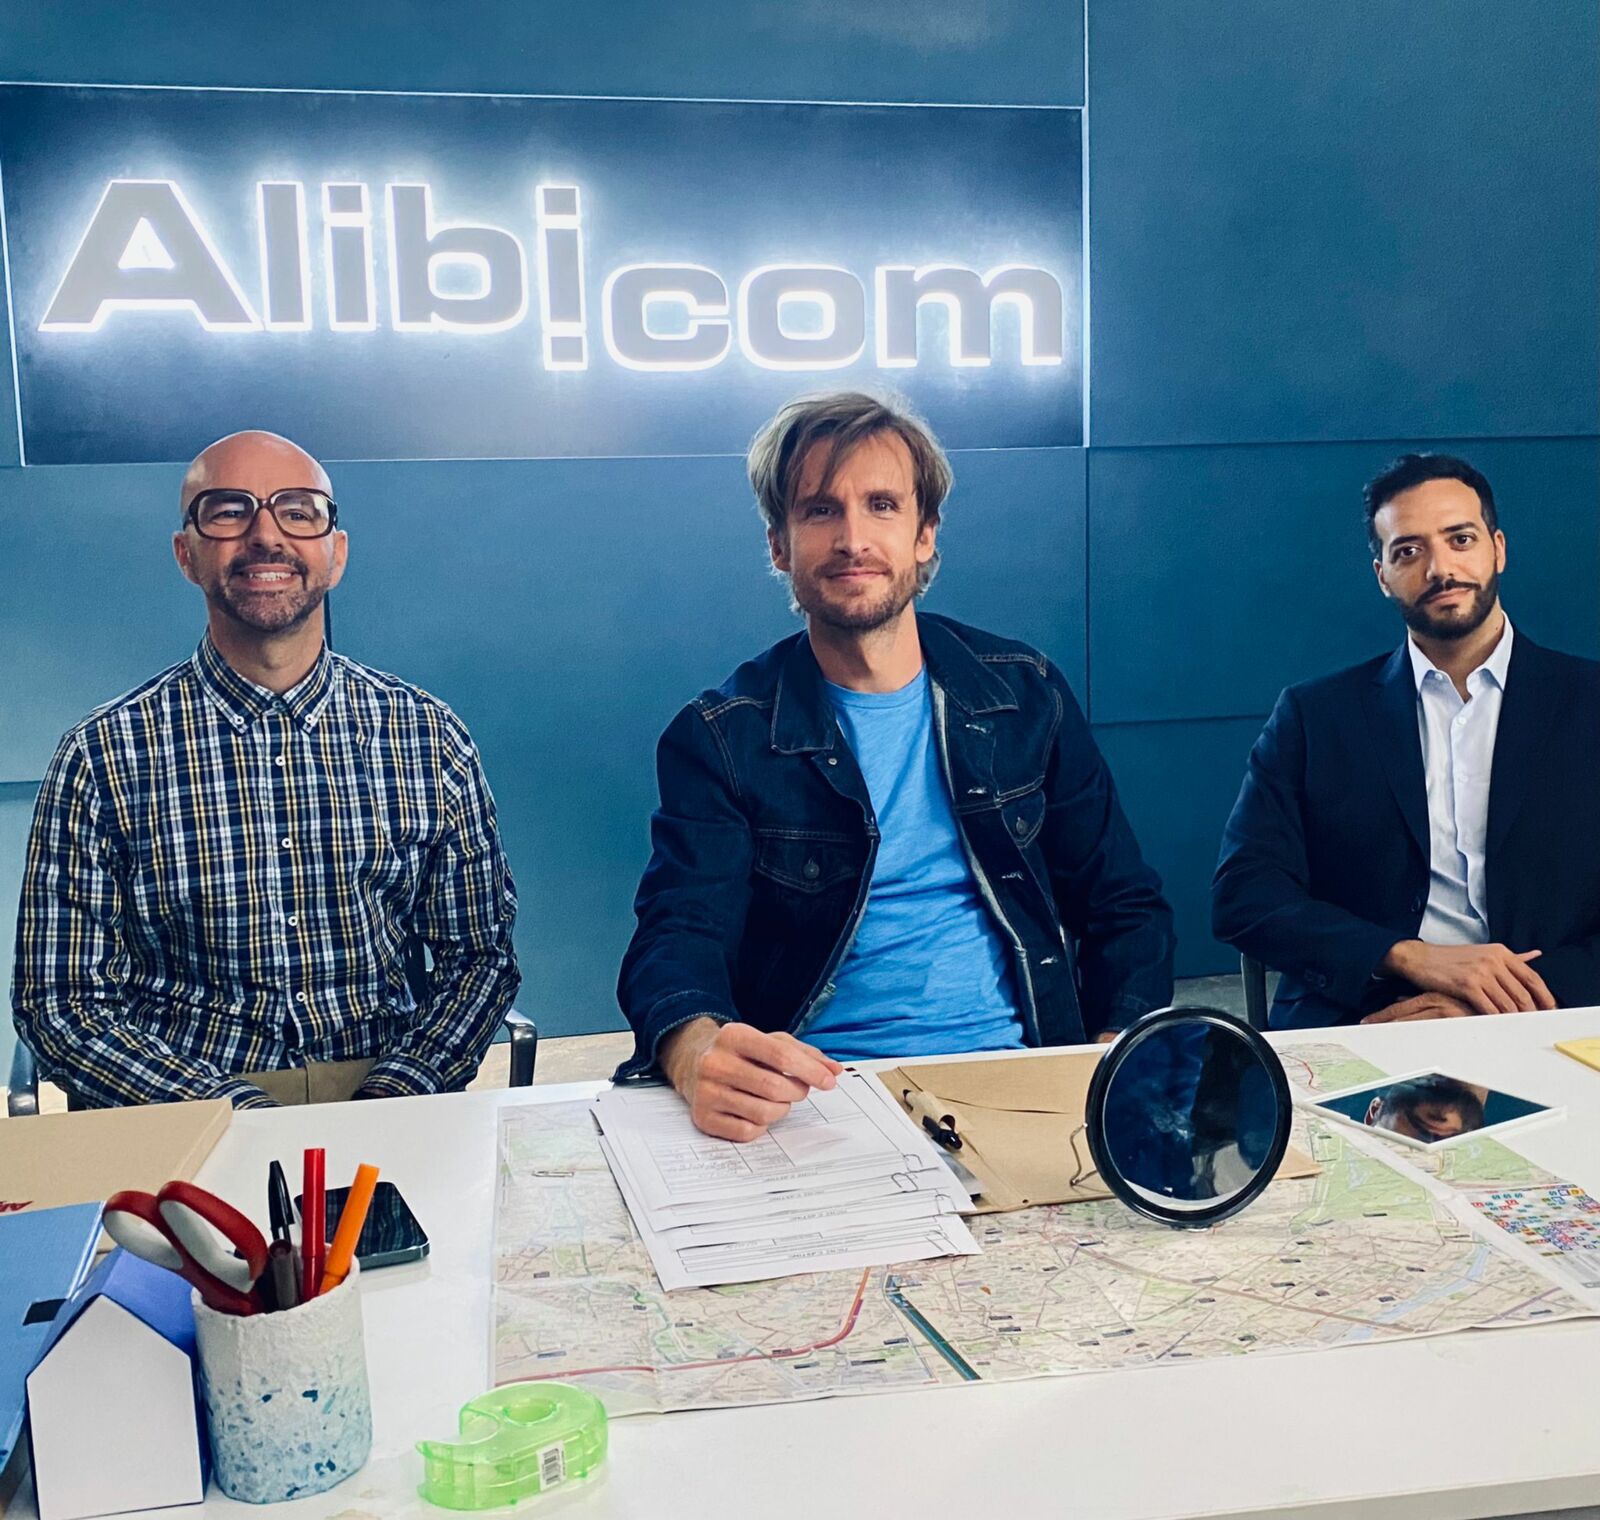 ALIBI.COM 2 (BANDE-ANNONCE) avec Philippe Lacheau, Tarek Boudali, Julien Arruti, Elodie Fontan - Le 8 février 2023 au cinéma